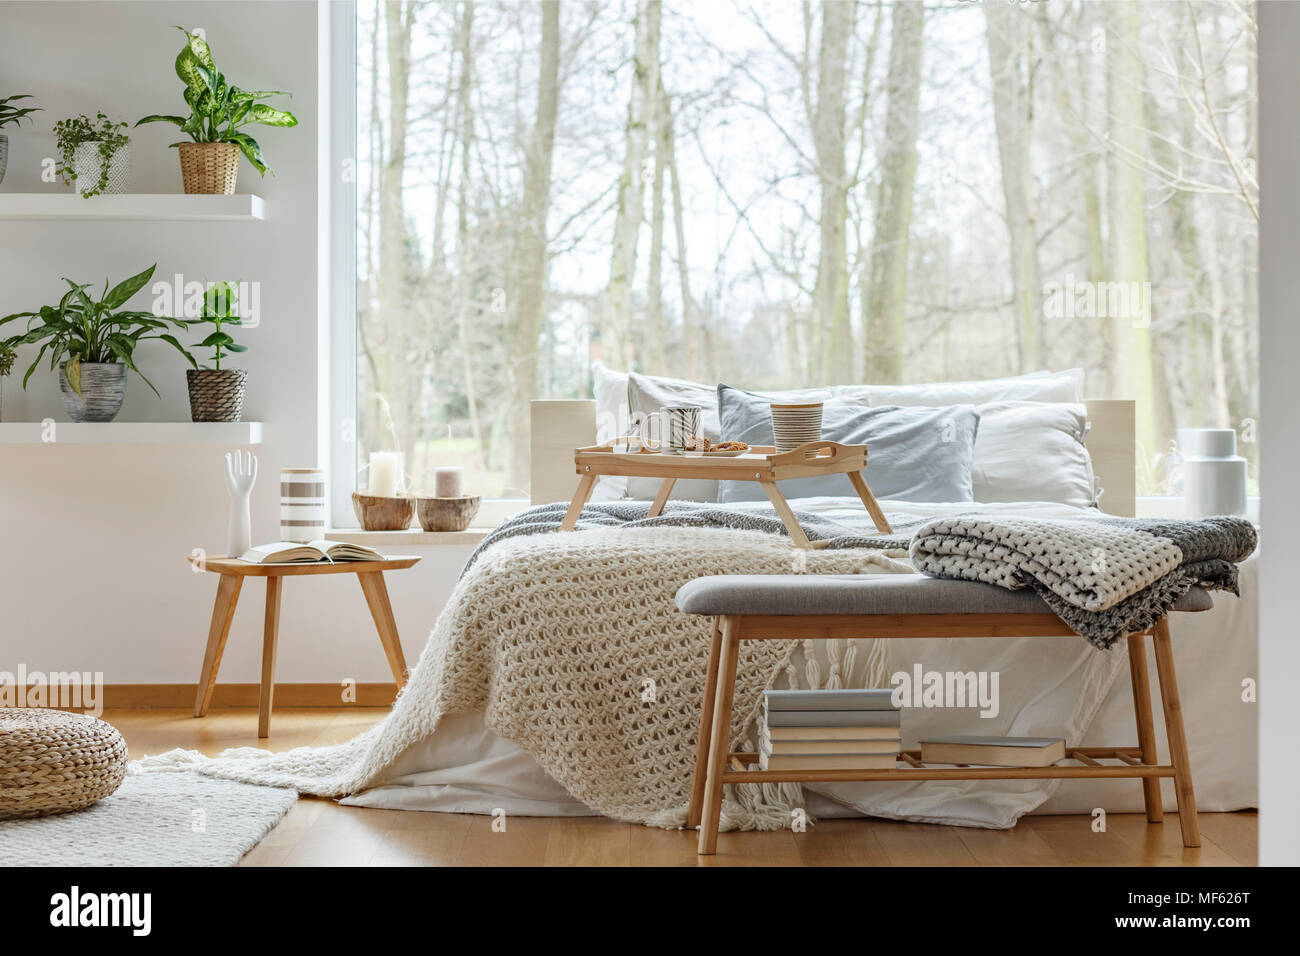 Decke auf Holzbank mit Bücher vor Bett im gemütlichen Schlafzimmer  Einrichtung mit Pflanzen Stockfotografie - Alamy